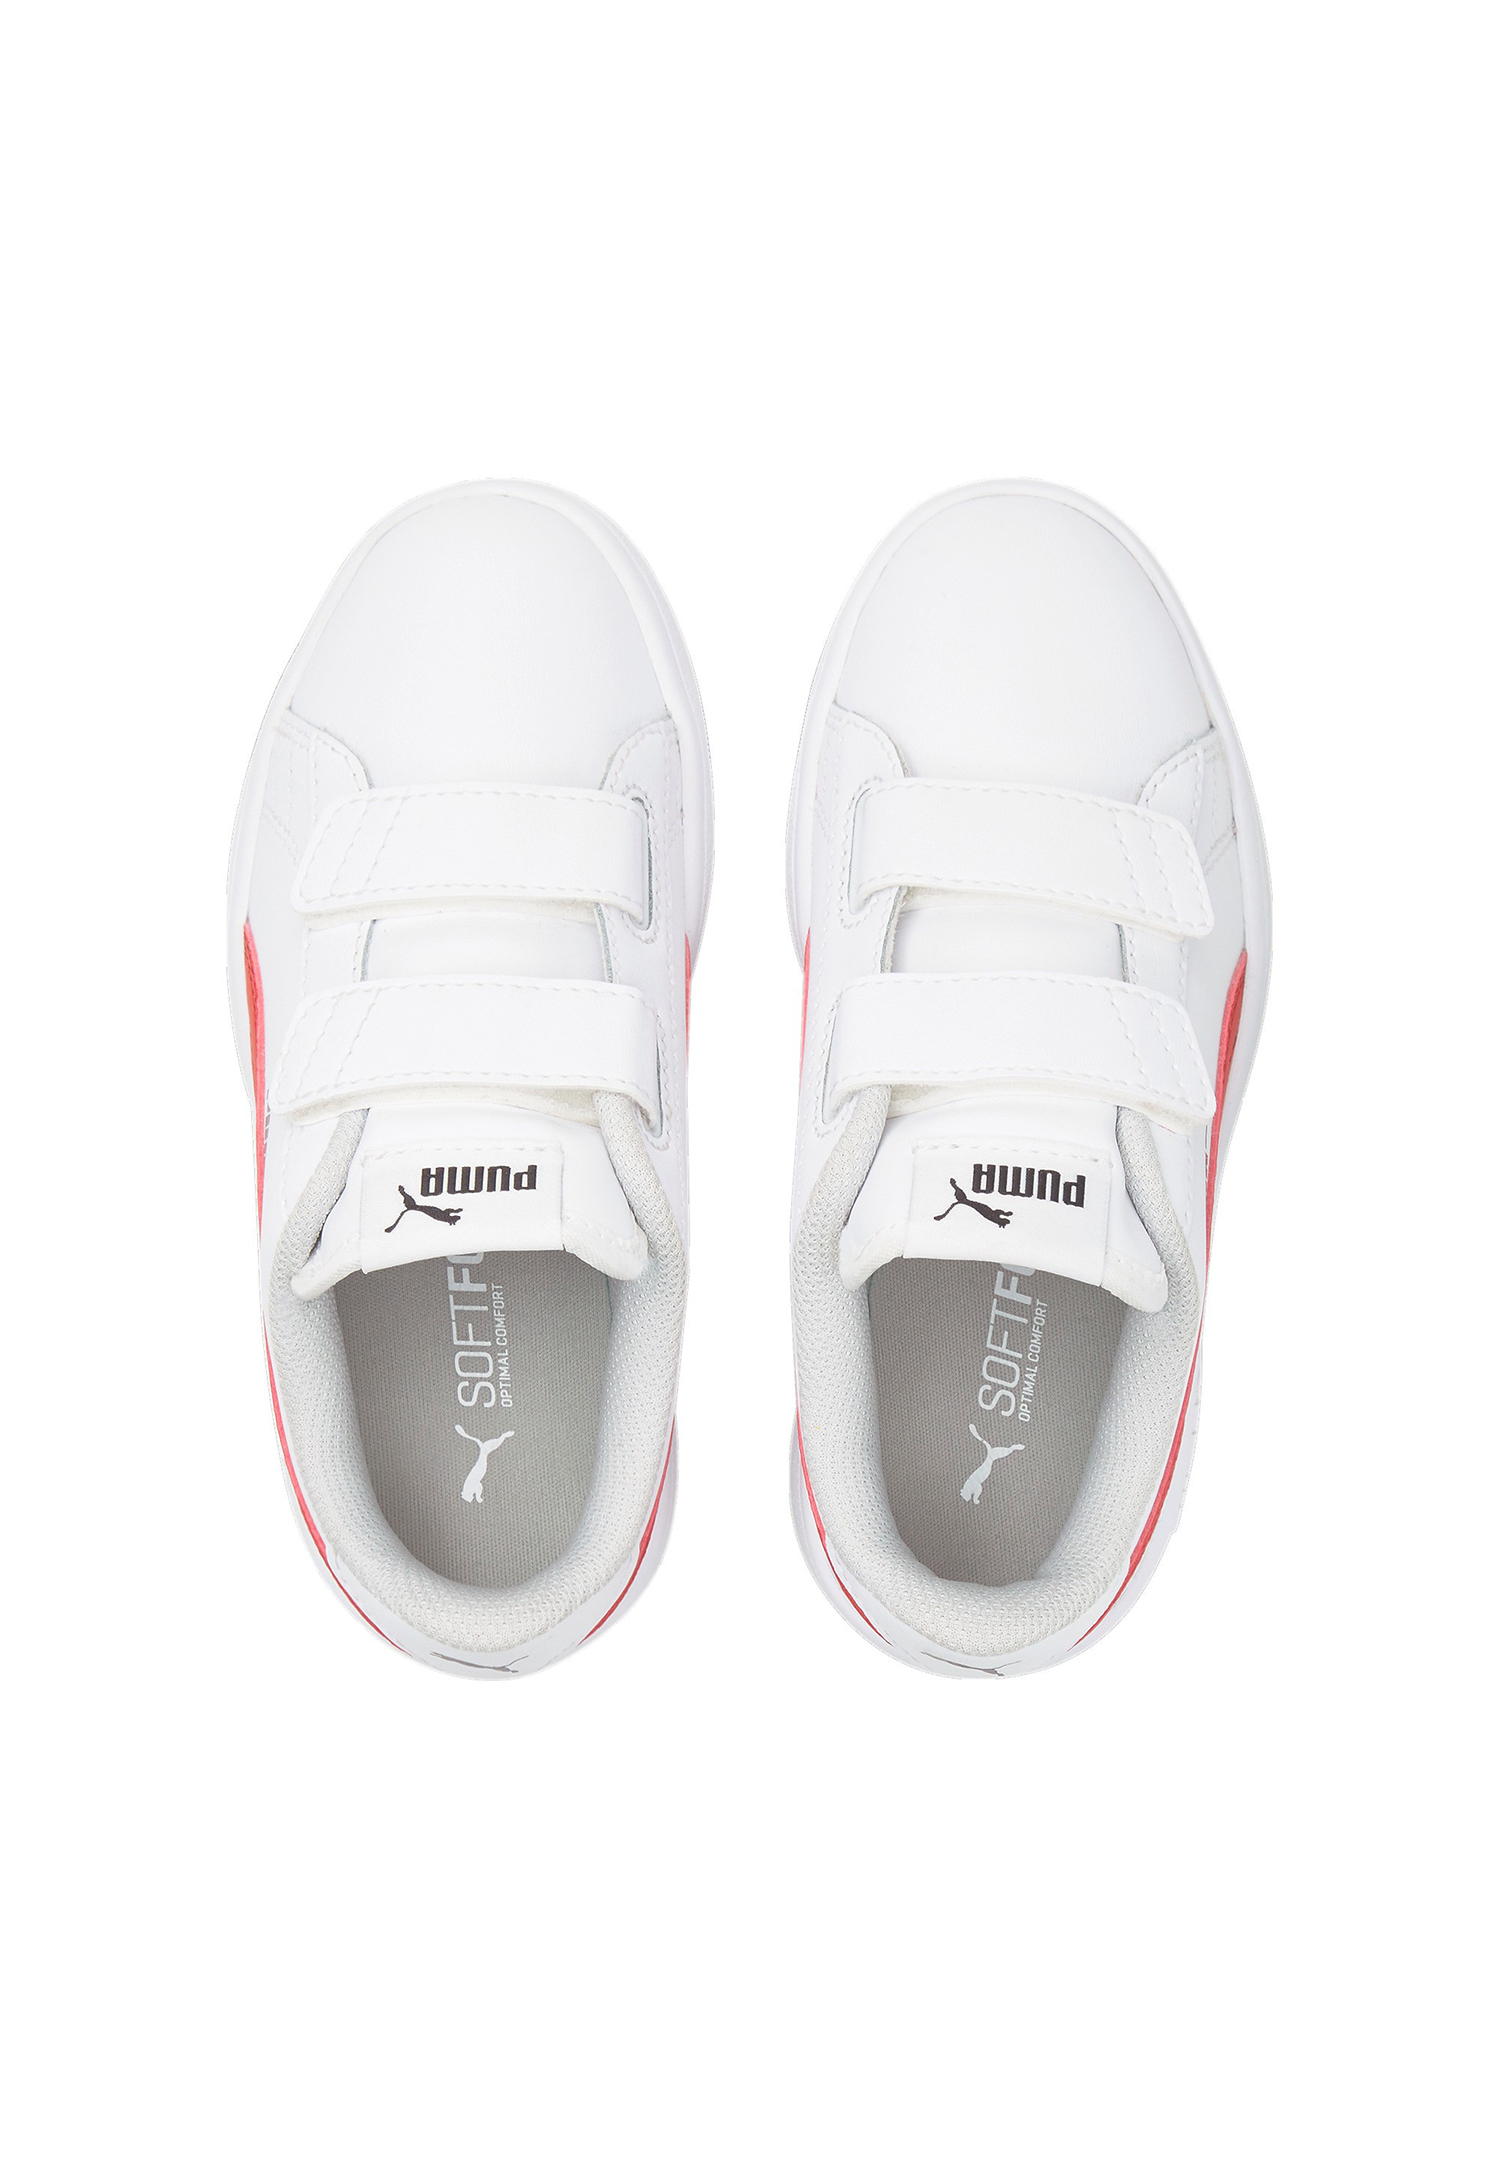 PUMA Smash V2 L V PS Kids Sneaker Schuhe weiss 365173 34